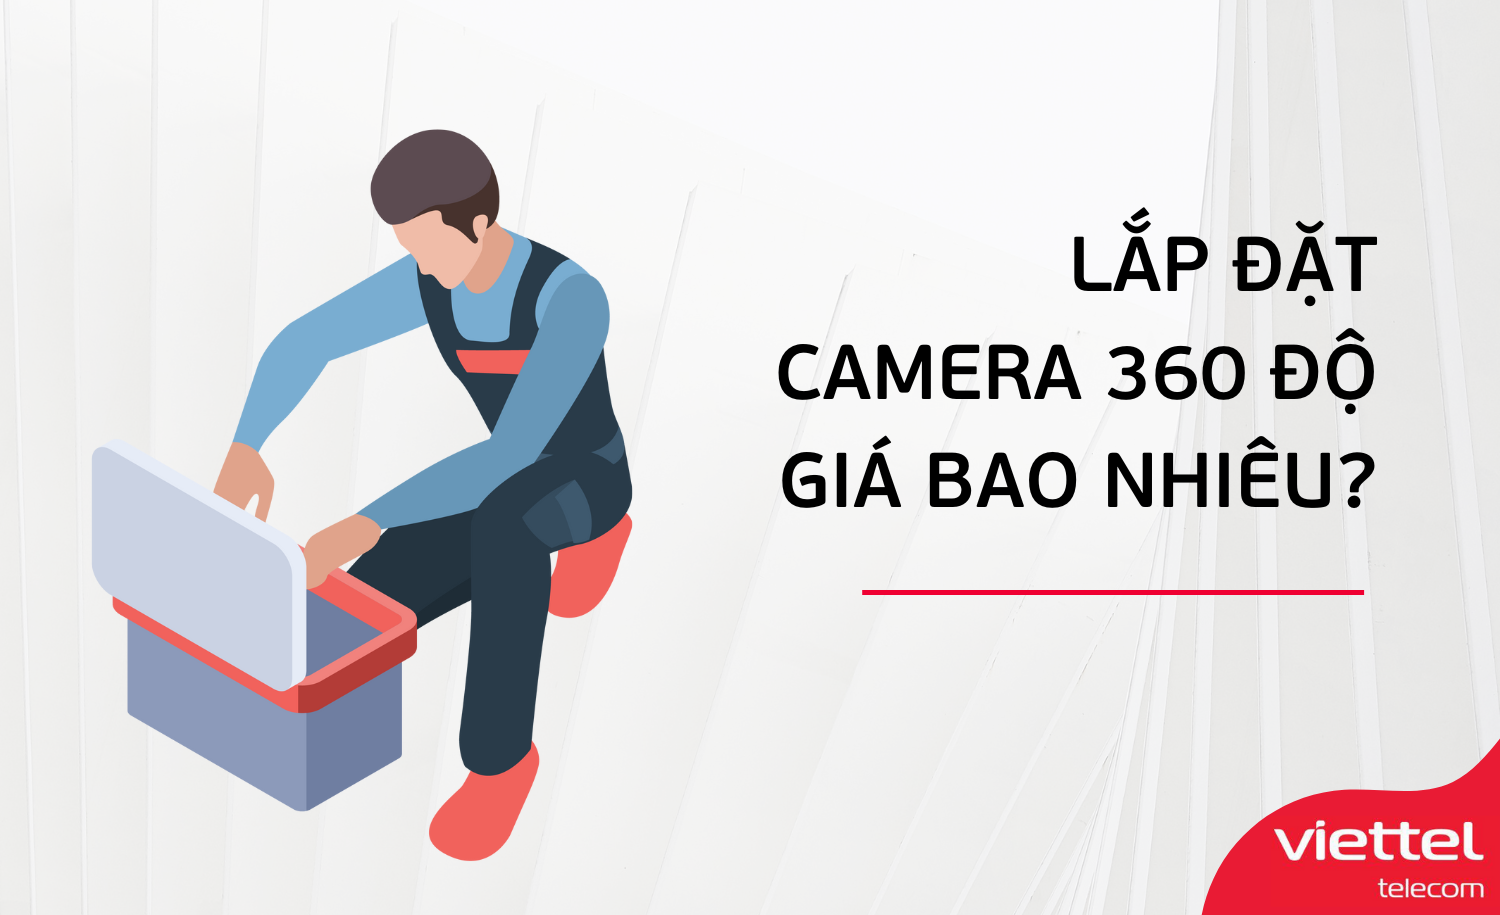 Camera Thông Minh 360 Độ - Bí Quyết Cho Hình Ảnh Sắc Nét Và Chân Thực